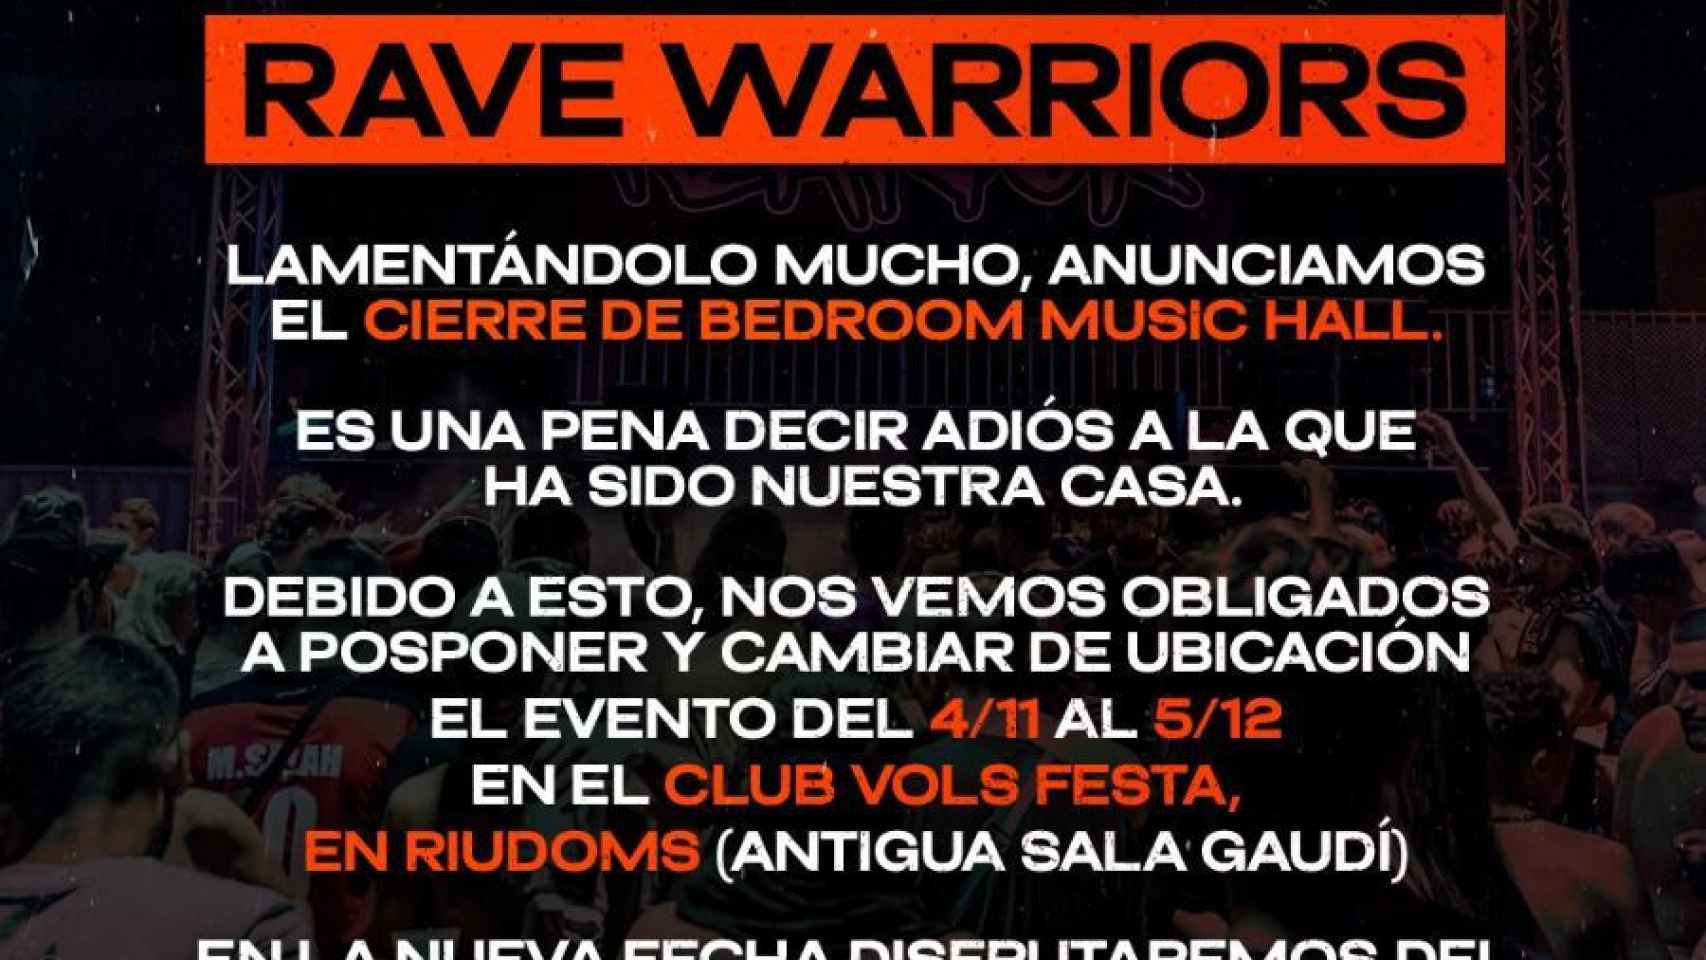 El comunicado de 'Rave Warriors' sobre Bedroom Music Hall